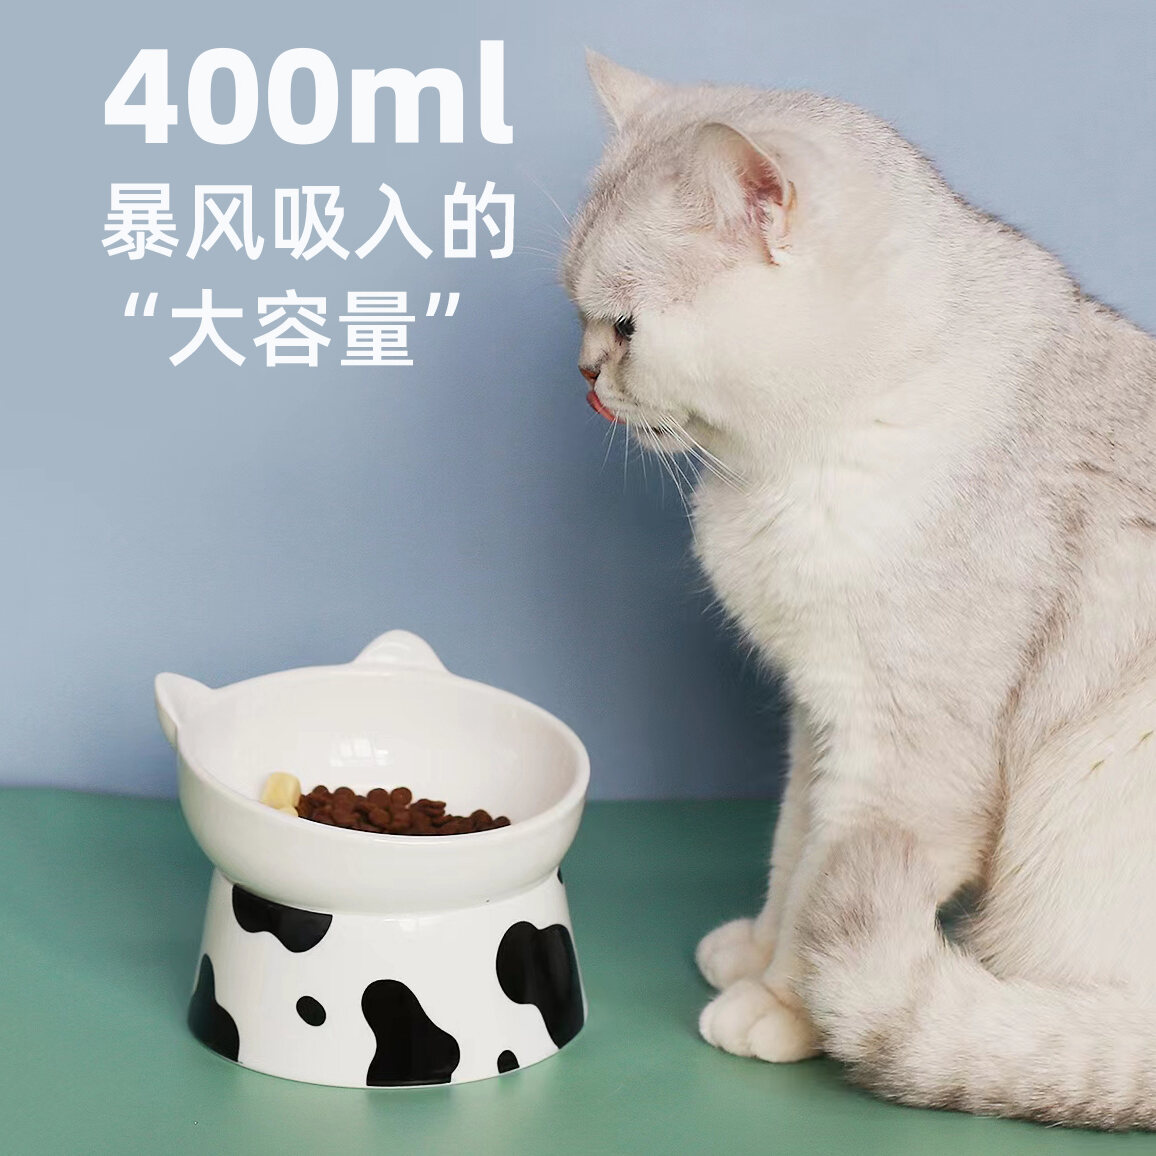 Bát Ăn Cho Mèo Khay Đựng Thức Ăn Cho Mèo Hình Chó Đốt Sống Cổ Bảo Vệ Miệng